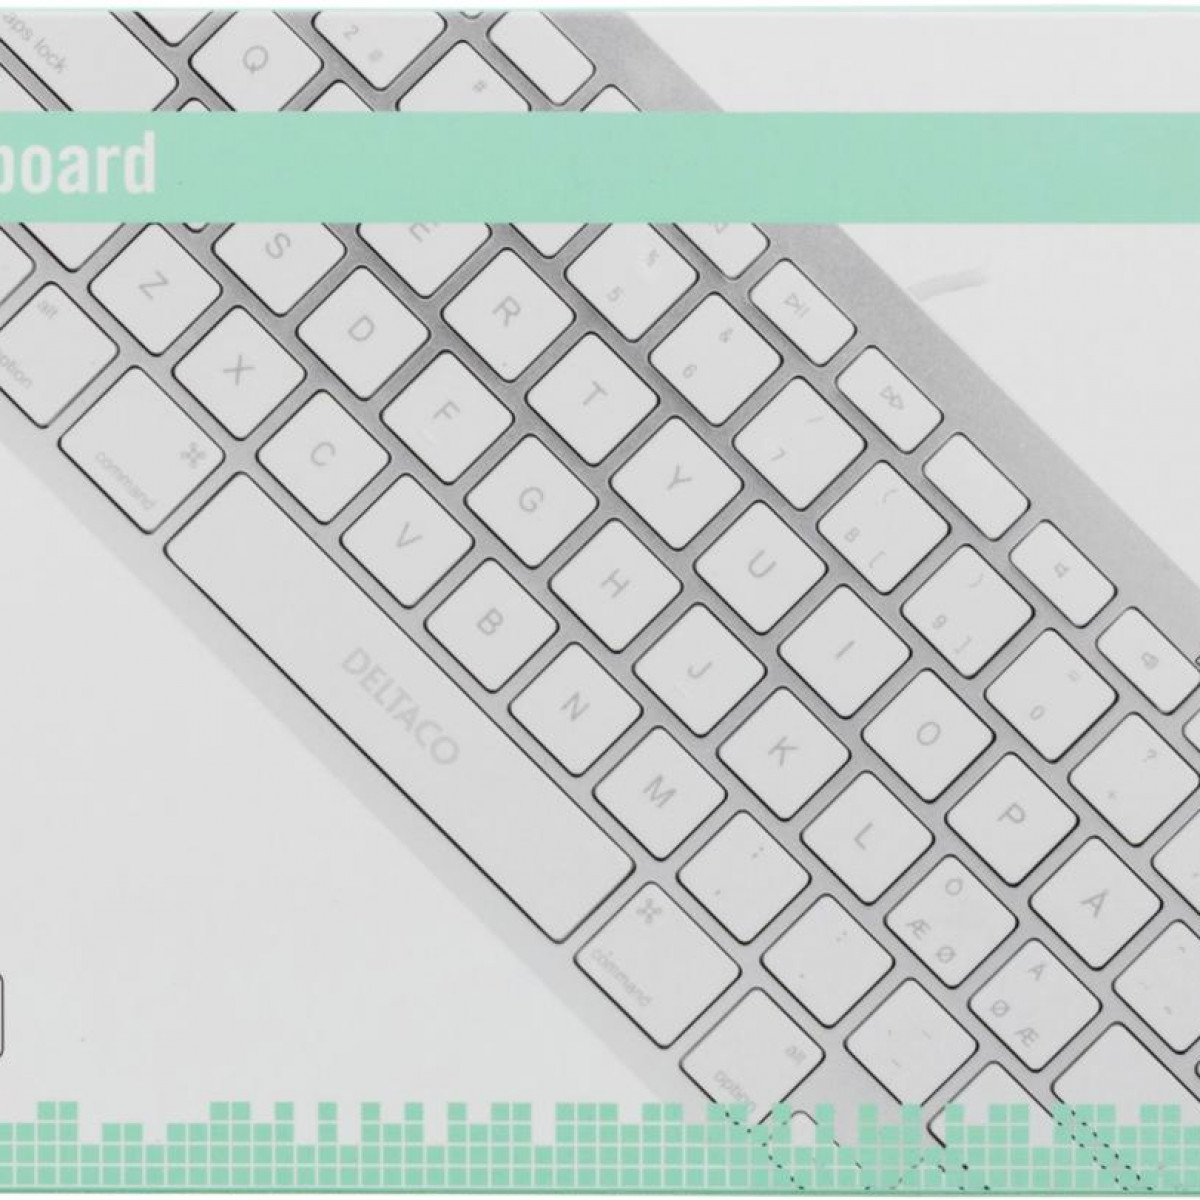 MFi, DELTACO iOS, für 1 Silber, Weiß / m, Tastatur Nordic, DELTACO Blitz-Tastatur